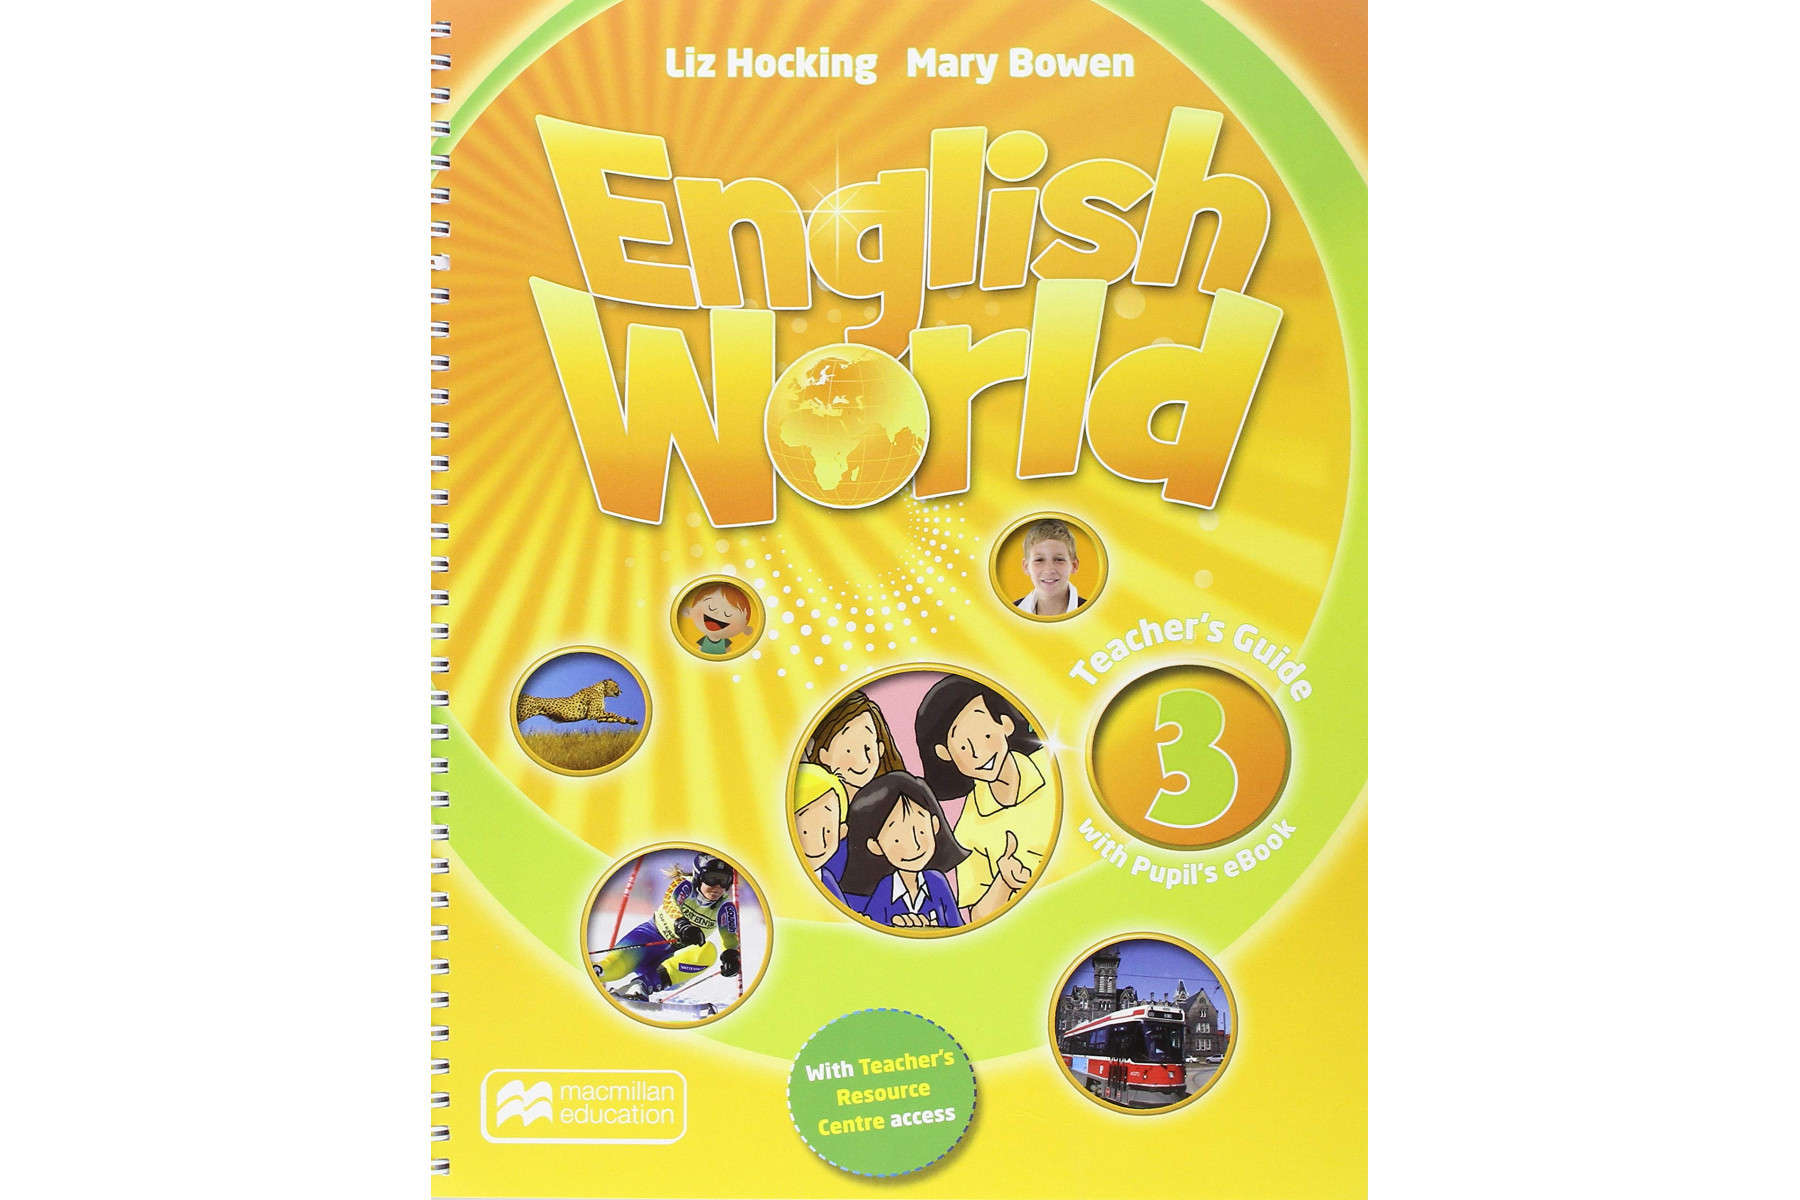 Инглиш ворлд. English World 3 pupil`s book 3 класс. Mary Bowen Liz Hocking English World 3. English World pupil's book. World Englishes.